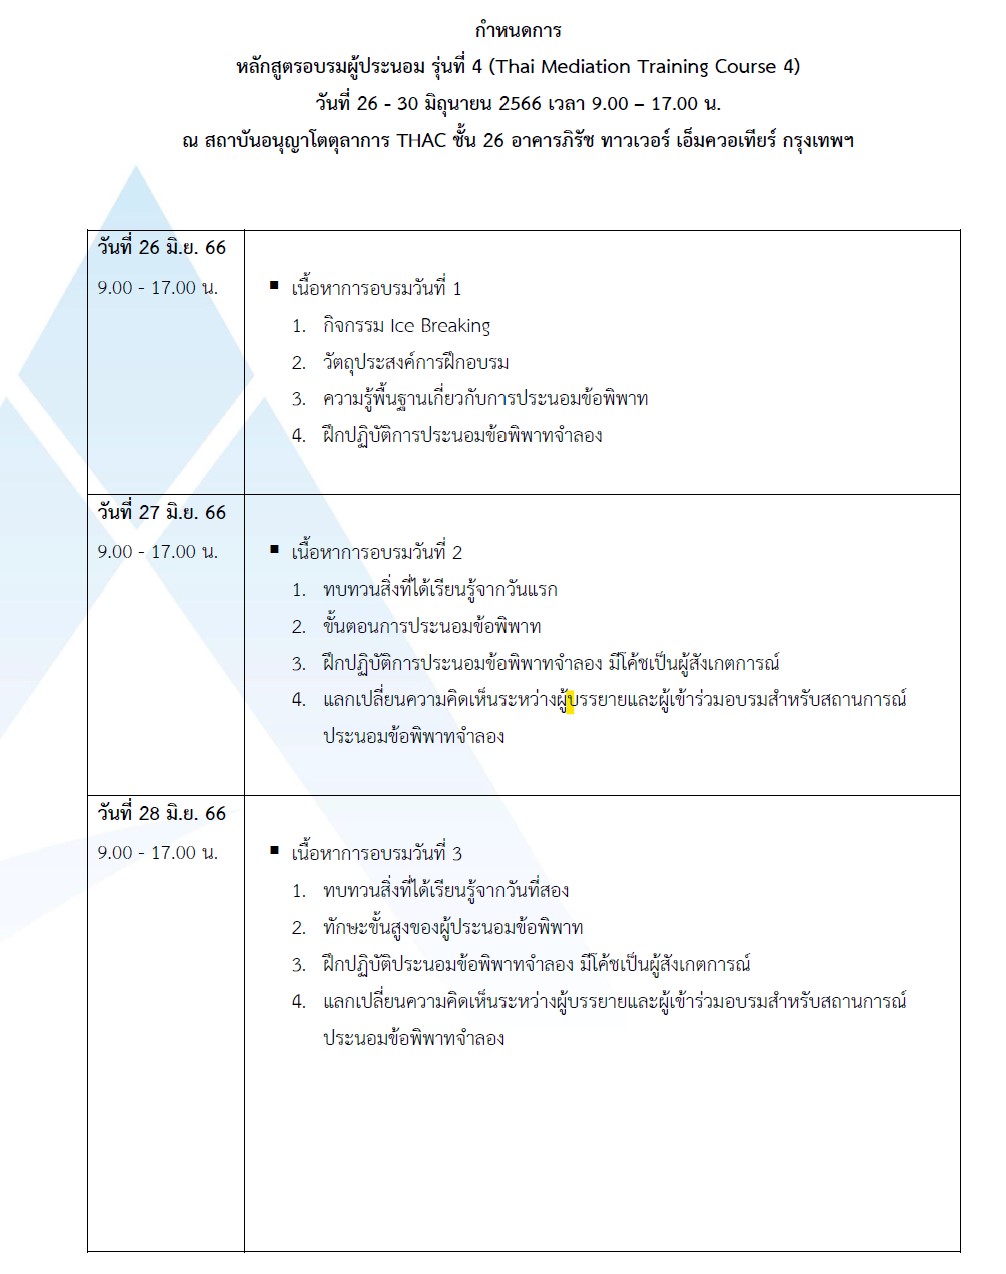 หลักสูตรอบรมผู้ประนอม รุ่นที่ 4 (Thai Mediation Training Course 4)